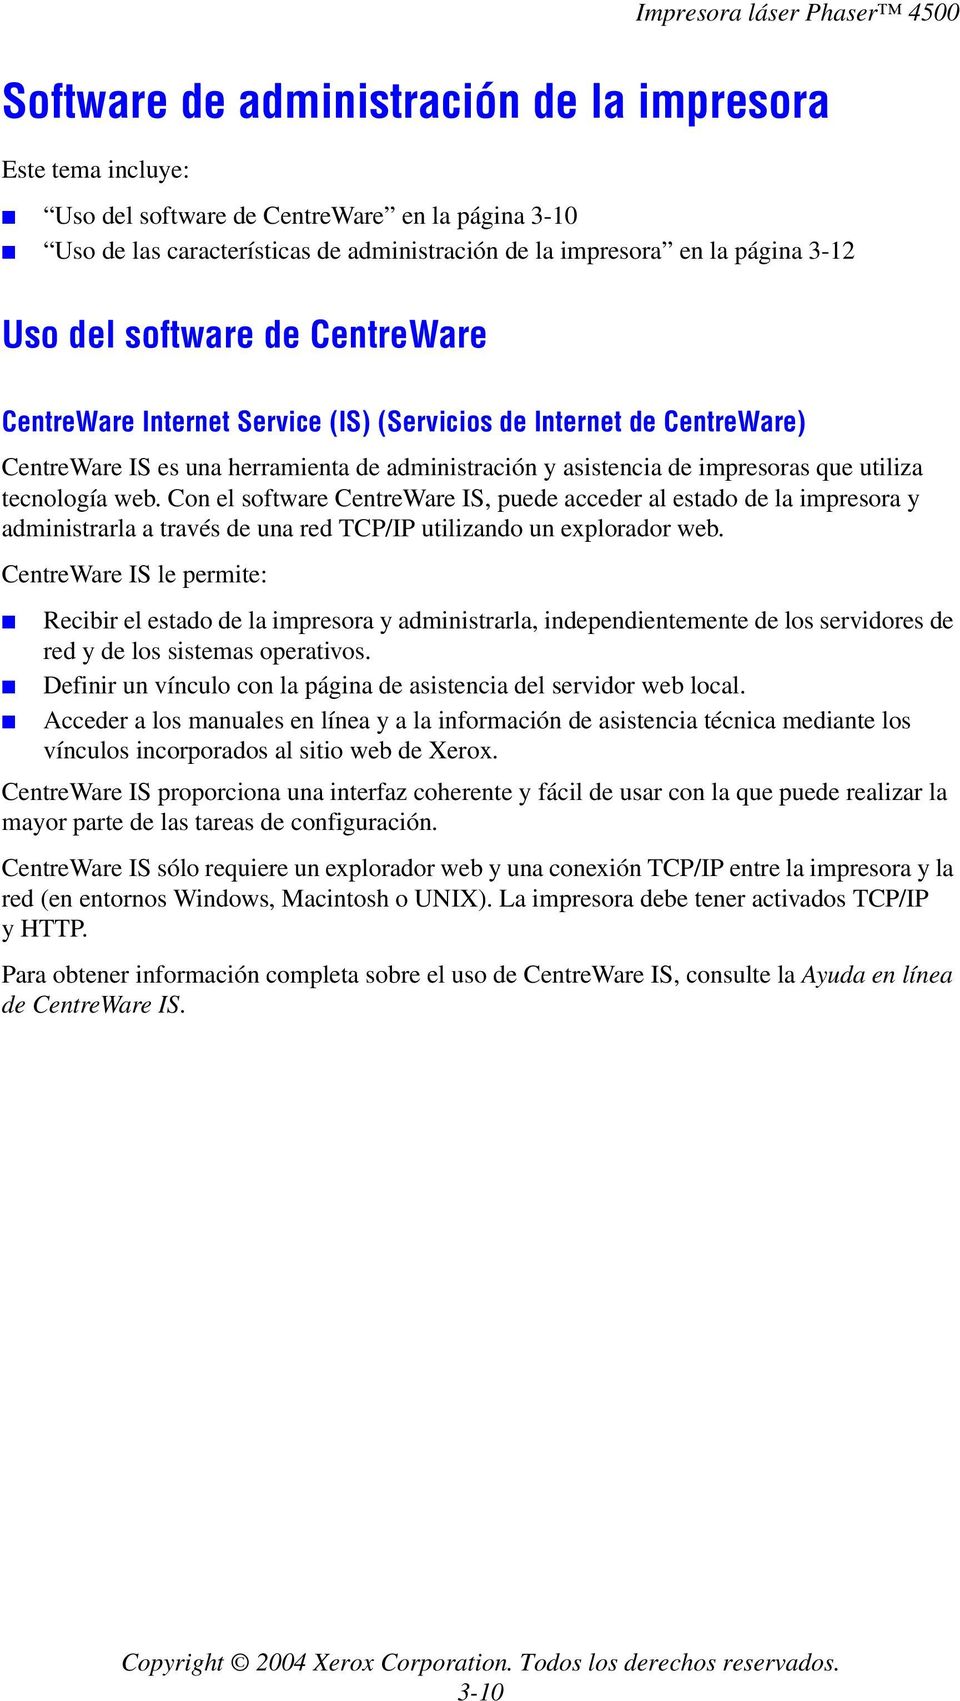 Con el software CentreWare IS, puede acceder al estado de la impresora y administrarla a través de una red TCP/IP utilizando un explorador web.